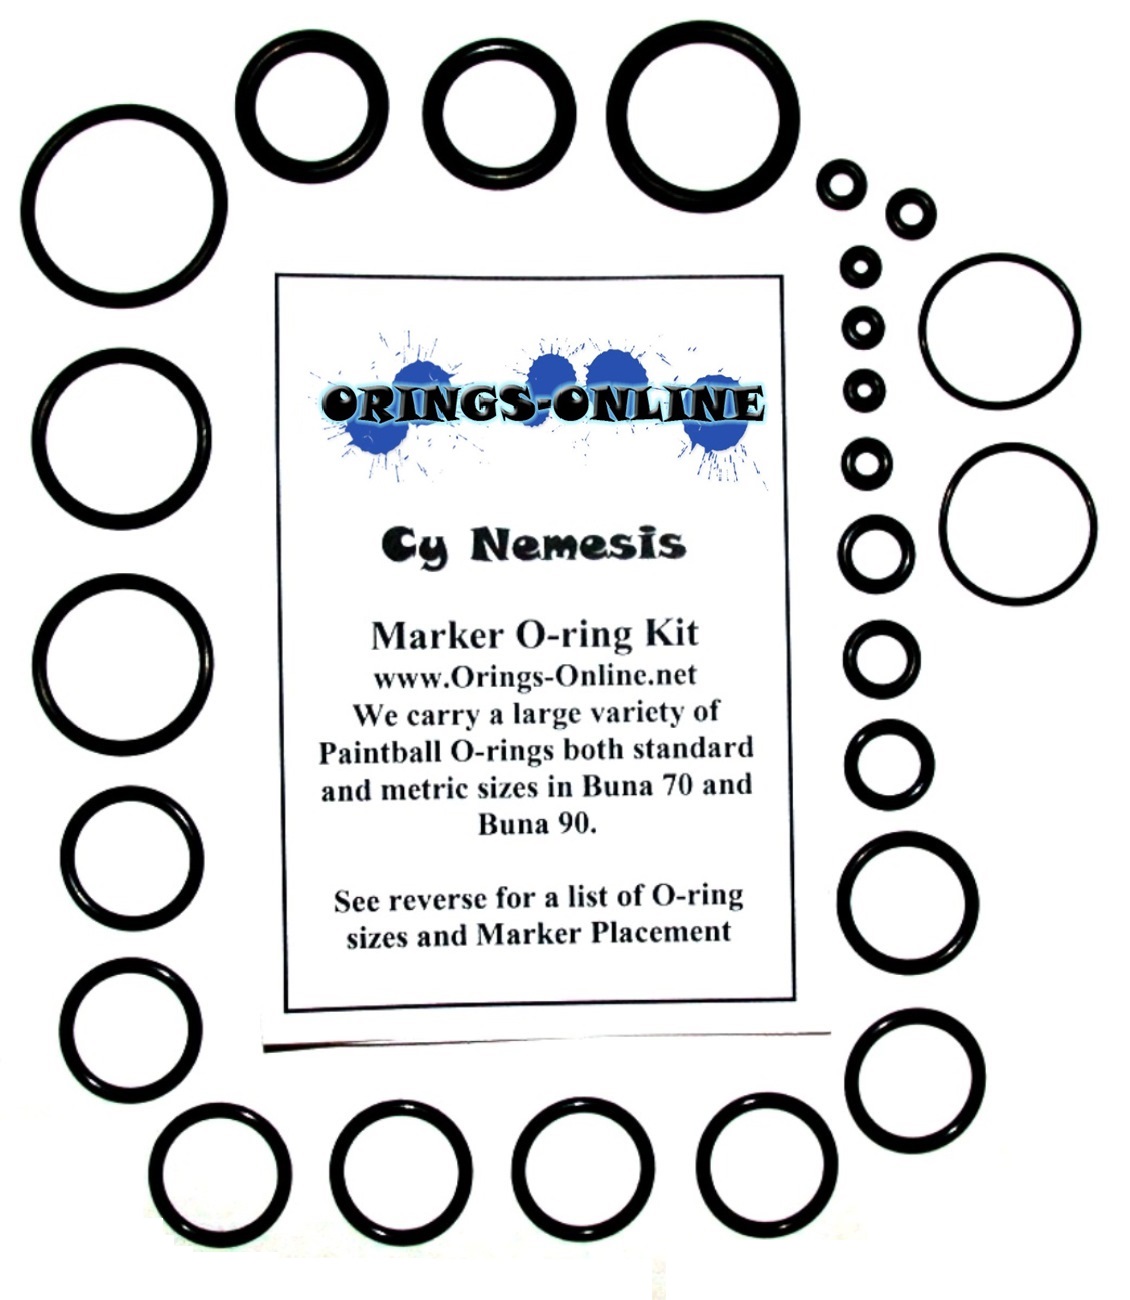 Cy Nemesis Marker O-ring Kit